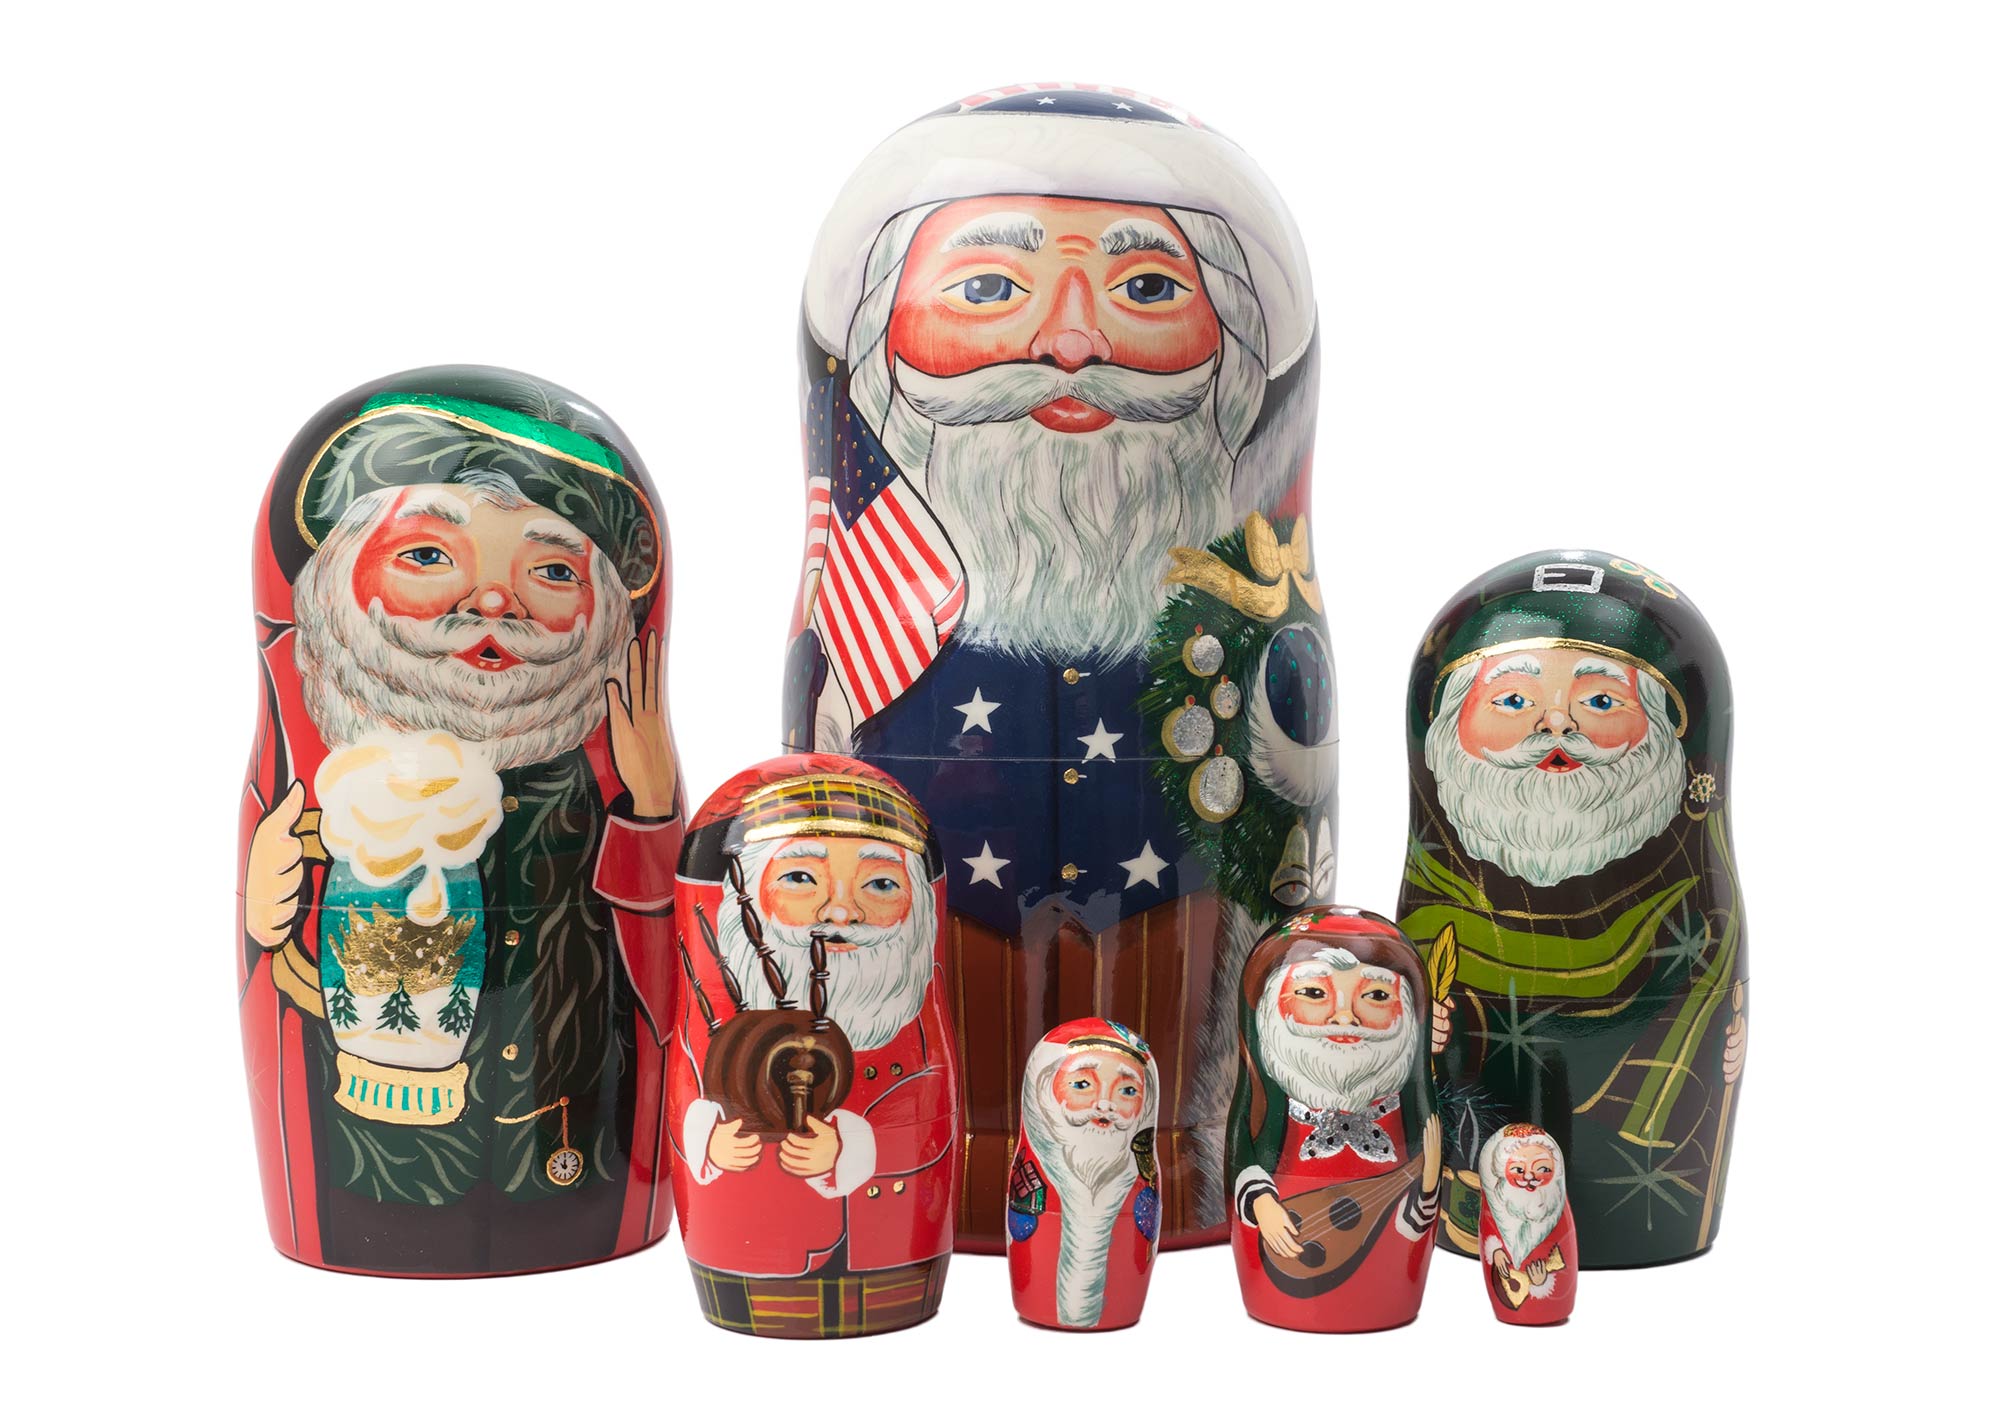 Buy International Santas Nesting Doll 7pc./8" at GoldenCockerel.com